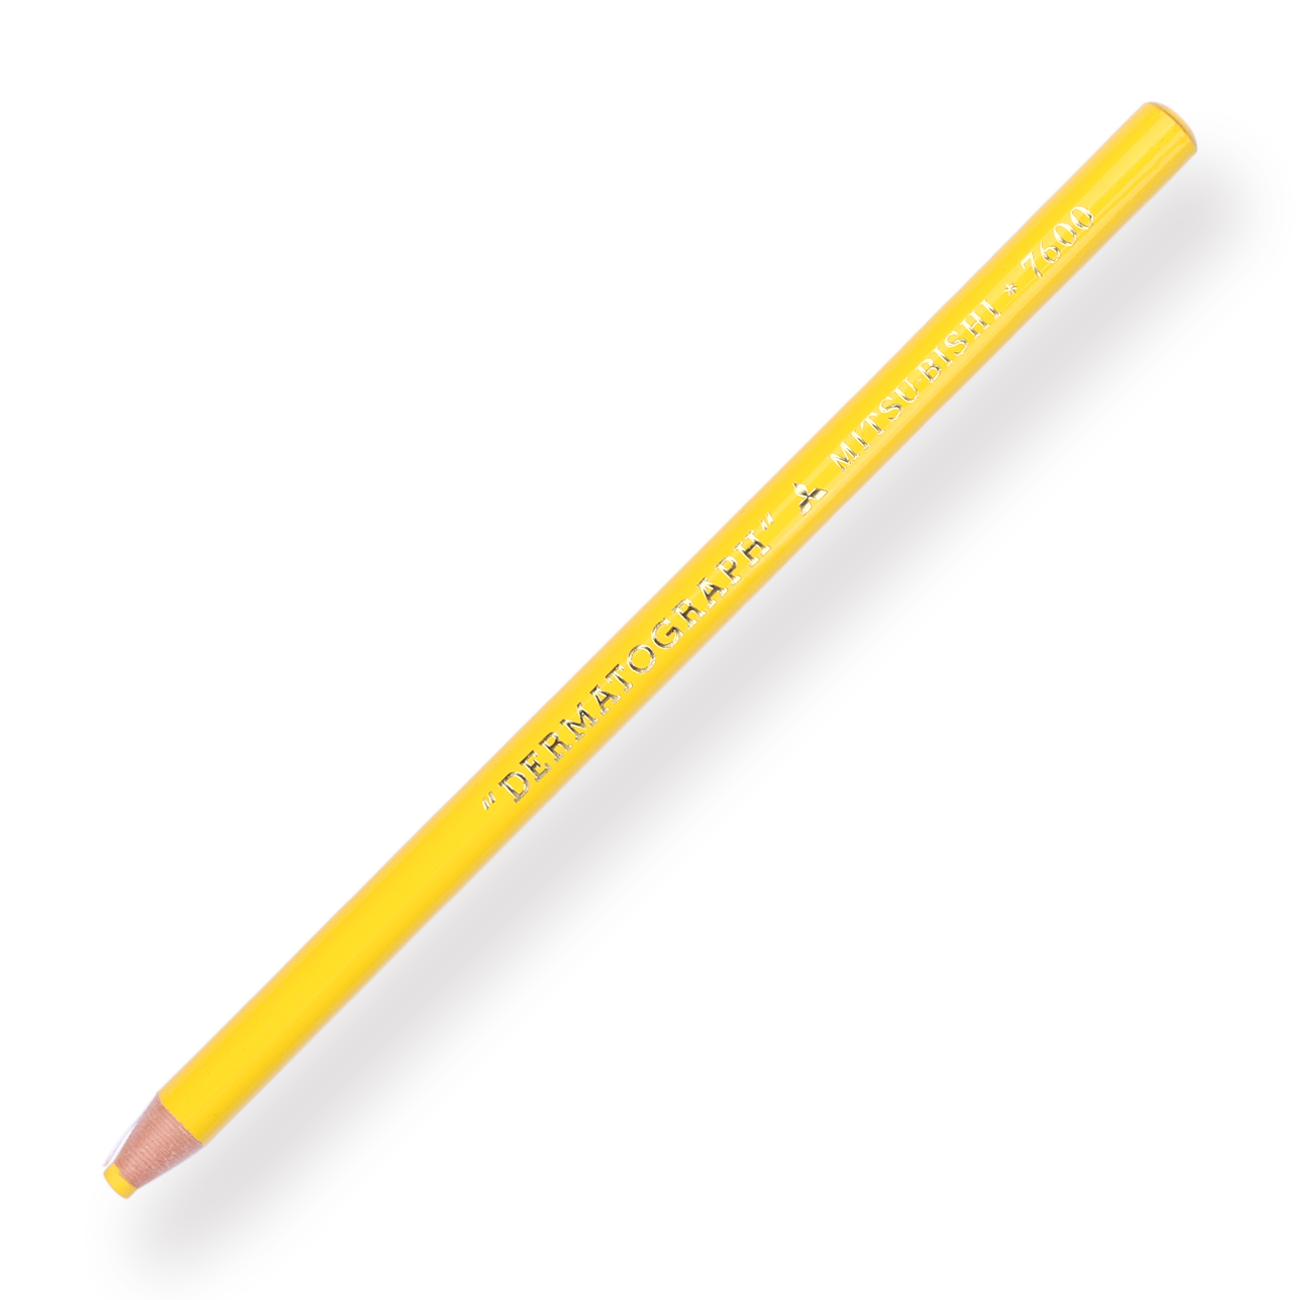 Uni-ball Dermatograph 7600 Colored Pencil - Yellow